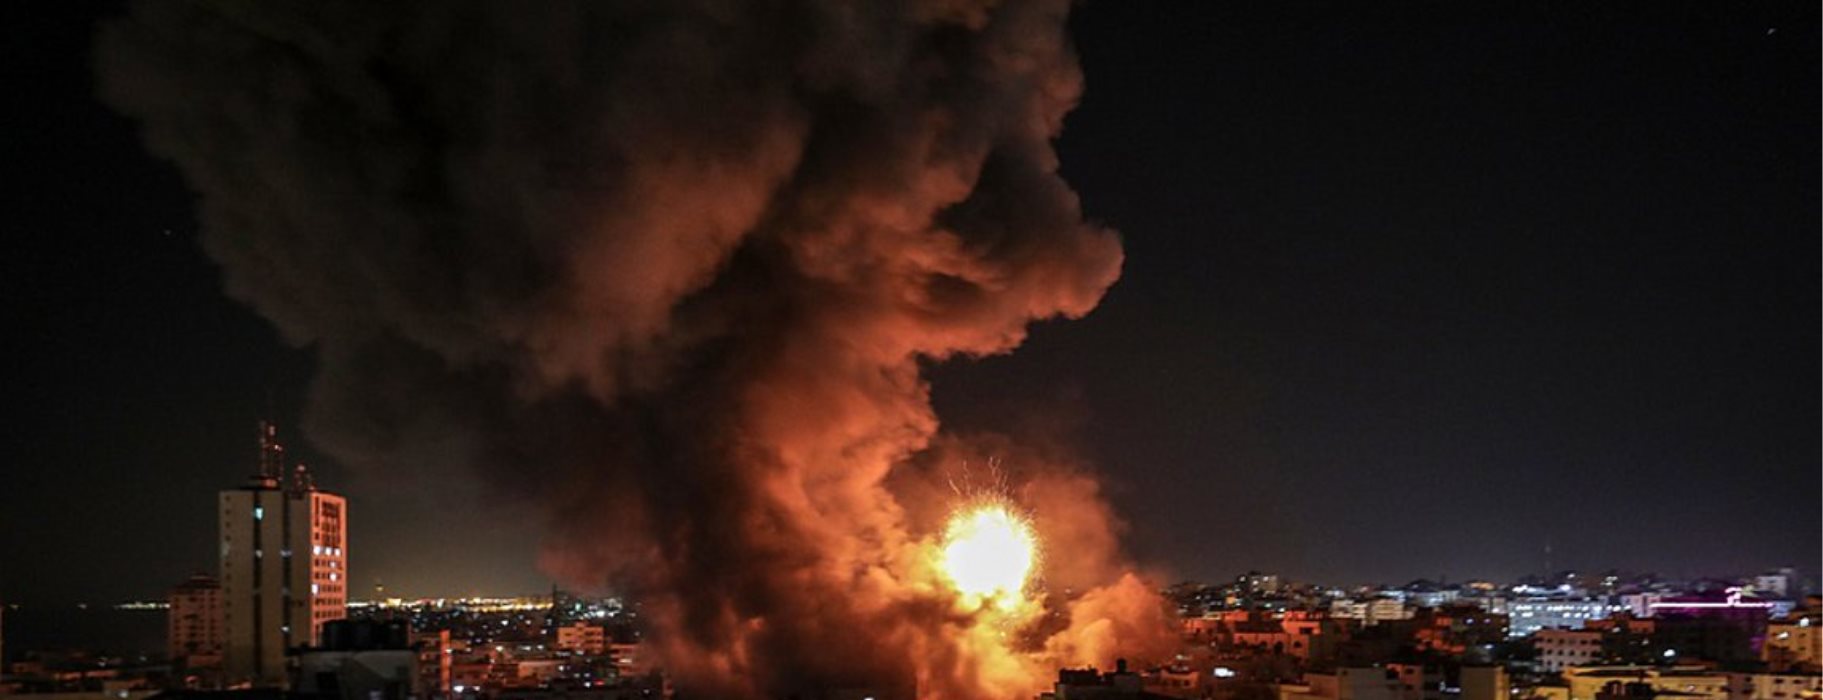 Ισραηλινοί βομβαρδισμοί στη Λωρίδα της Γάζας – Ως αντίποινα για τις επιθέσεις με εμπρηστικά μπαλόνια